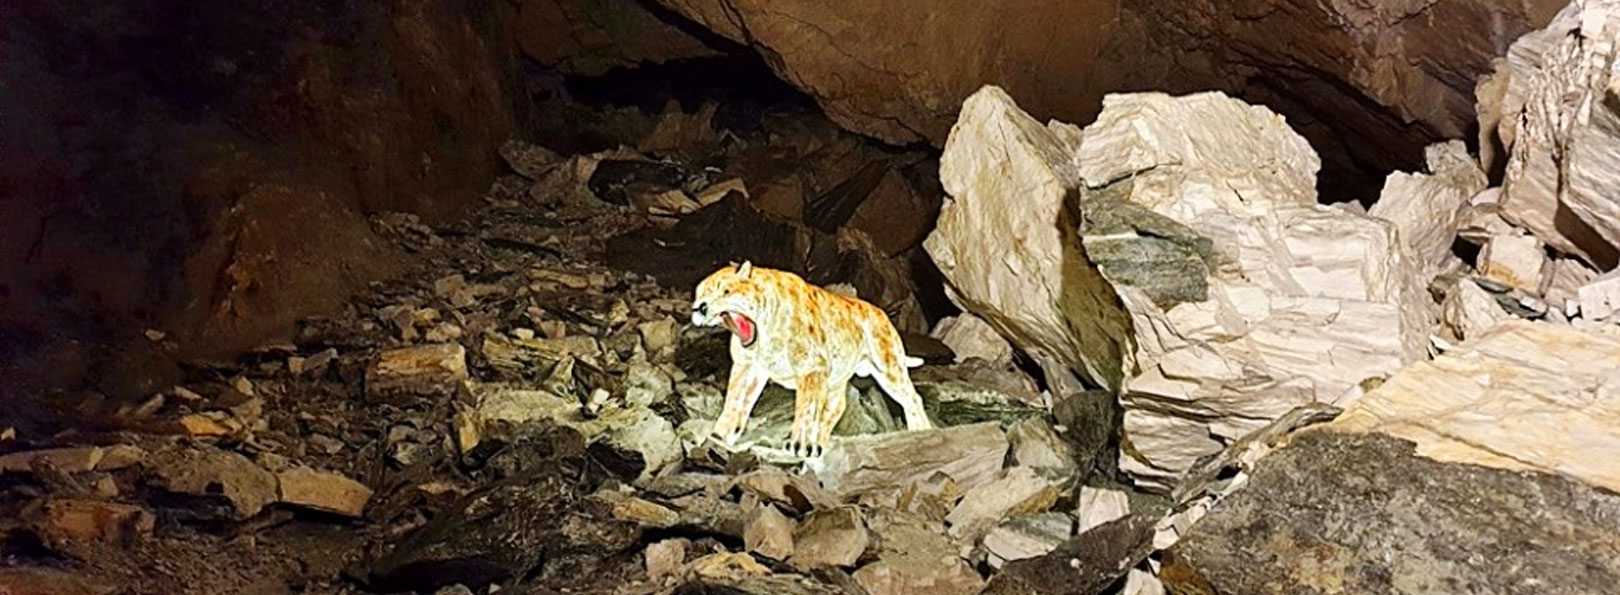 활옥동굴 내부 호랑이 사진